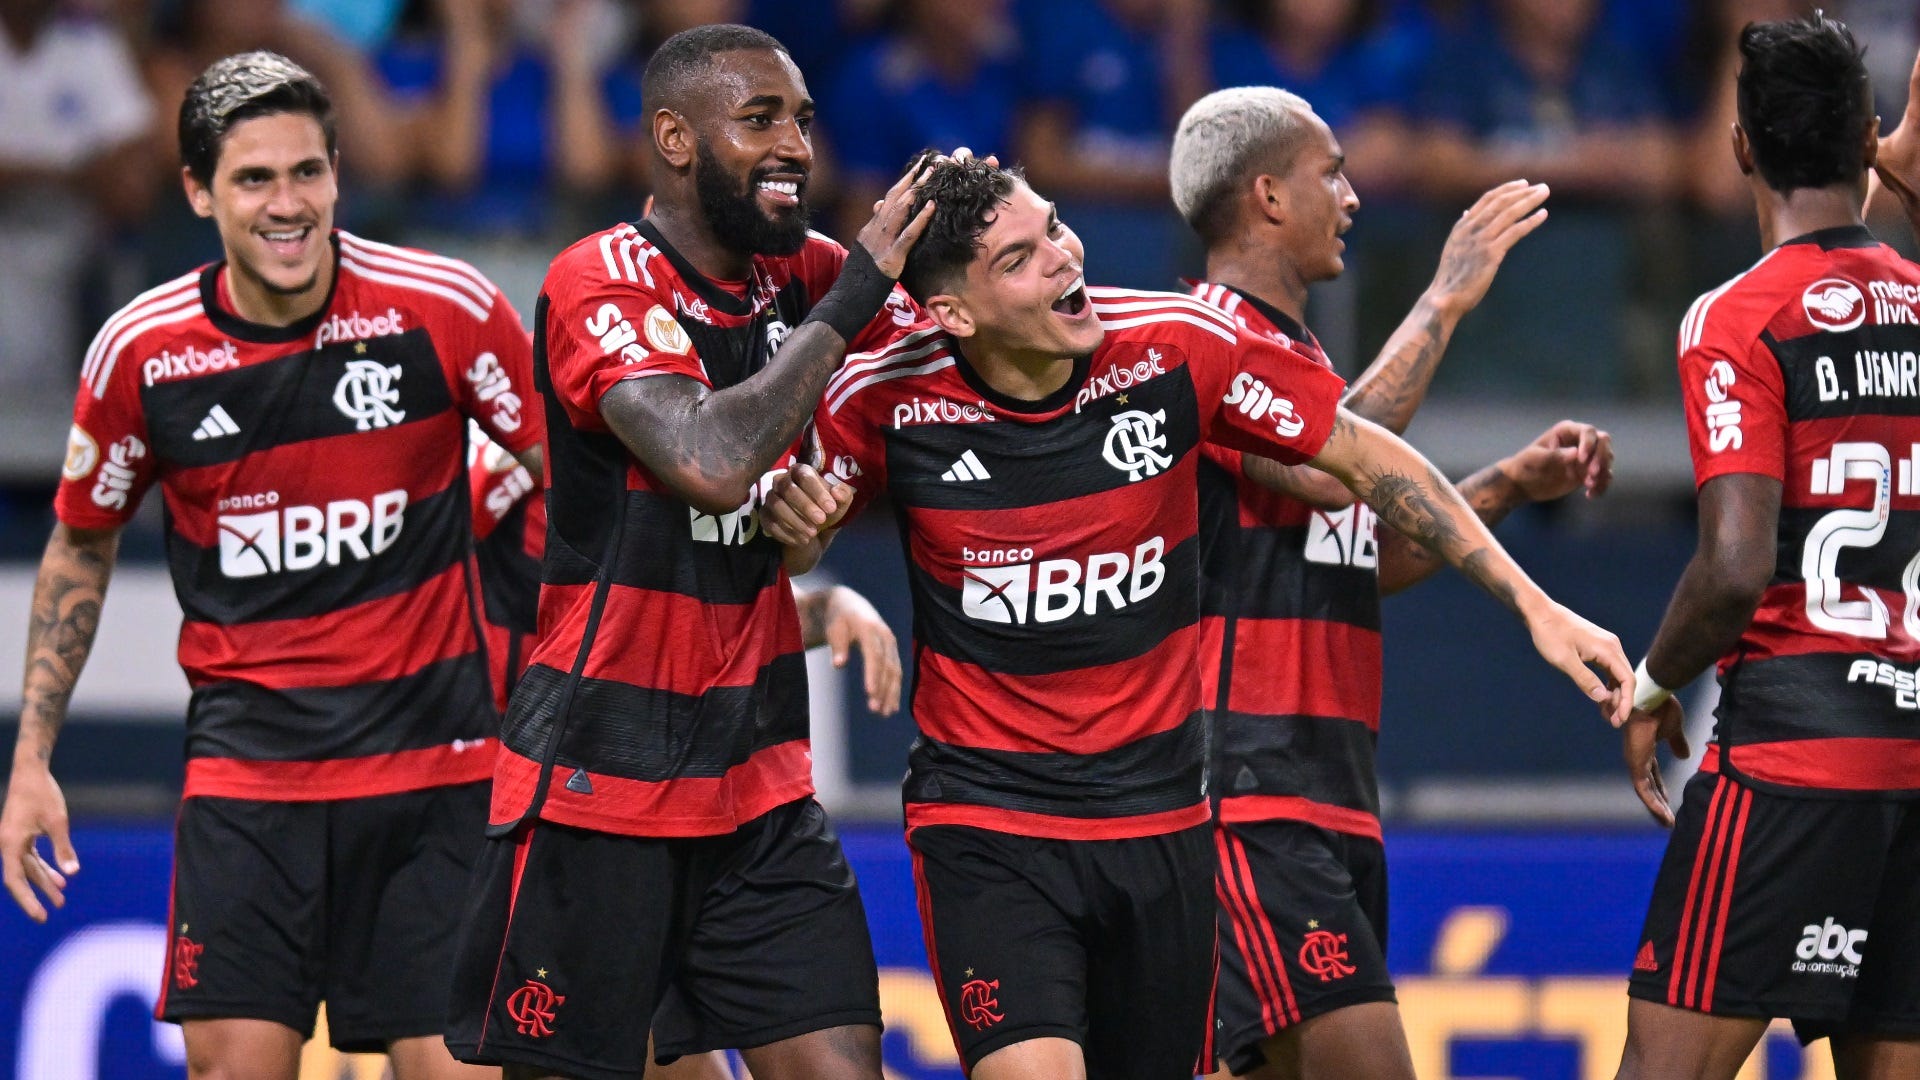 Flamengo x RB Bragantino: onde assistir ao vivo na TV e online, que horas  é, escalação e mais do Campeonato Brasileiro